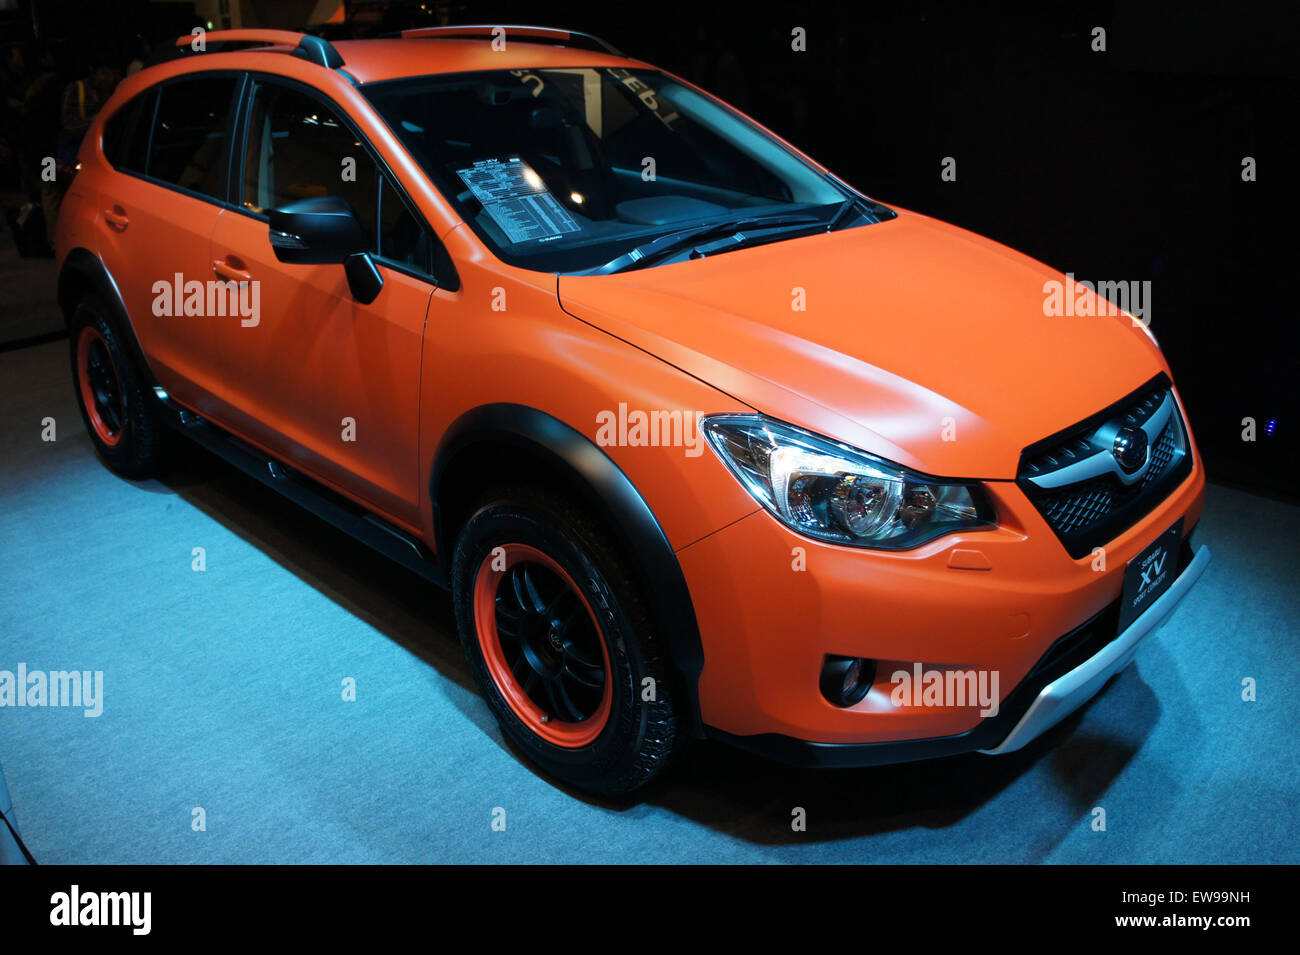 Subaru XV Sport Concept front 2013 Tokyo Auto Salon Stock Photo